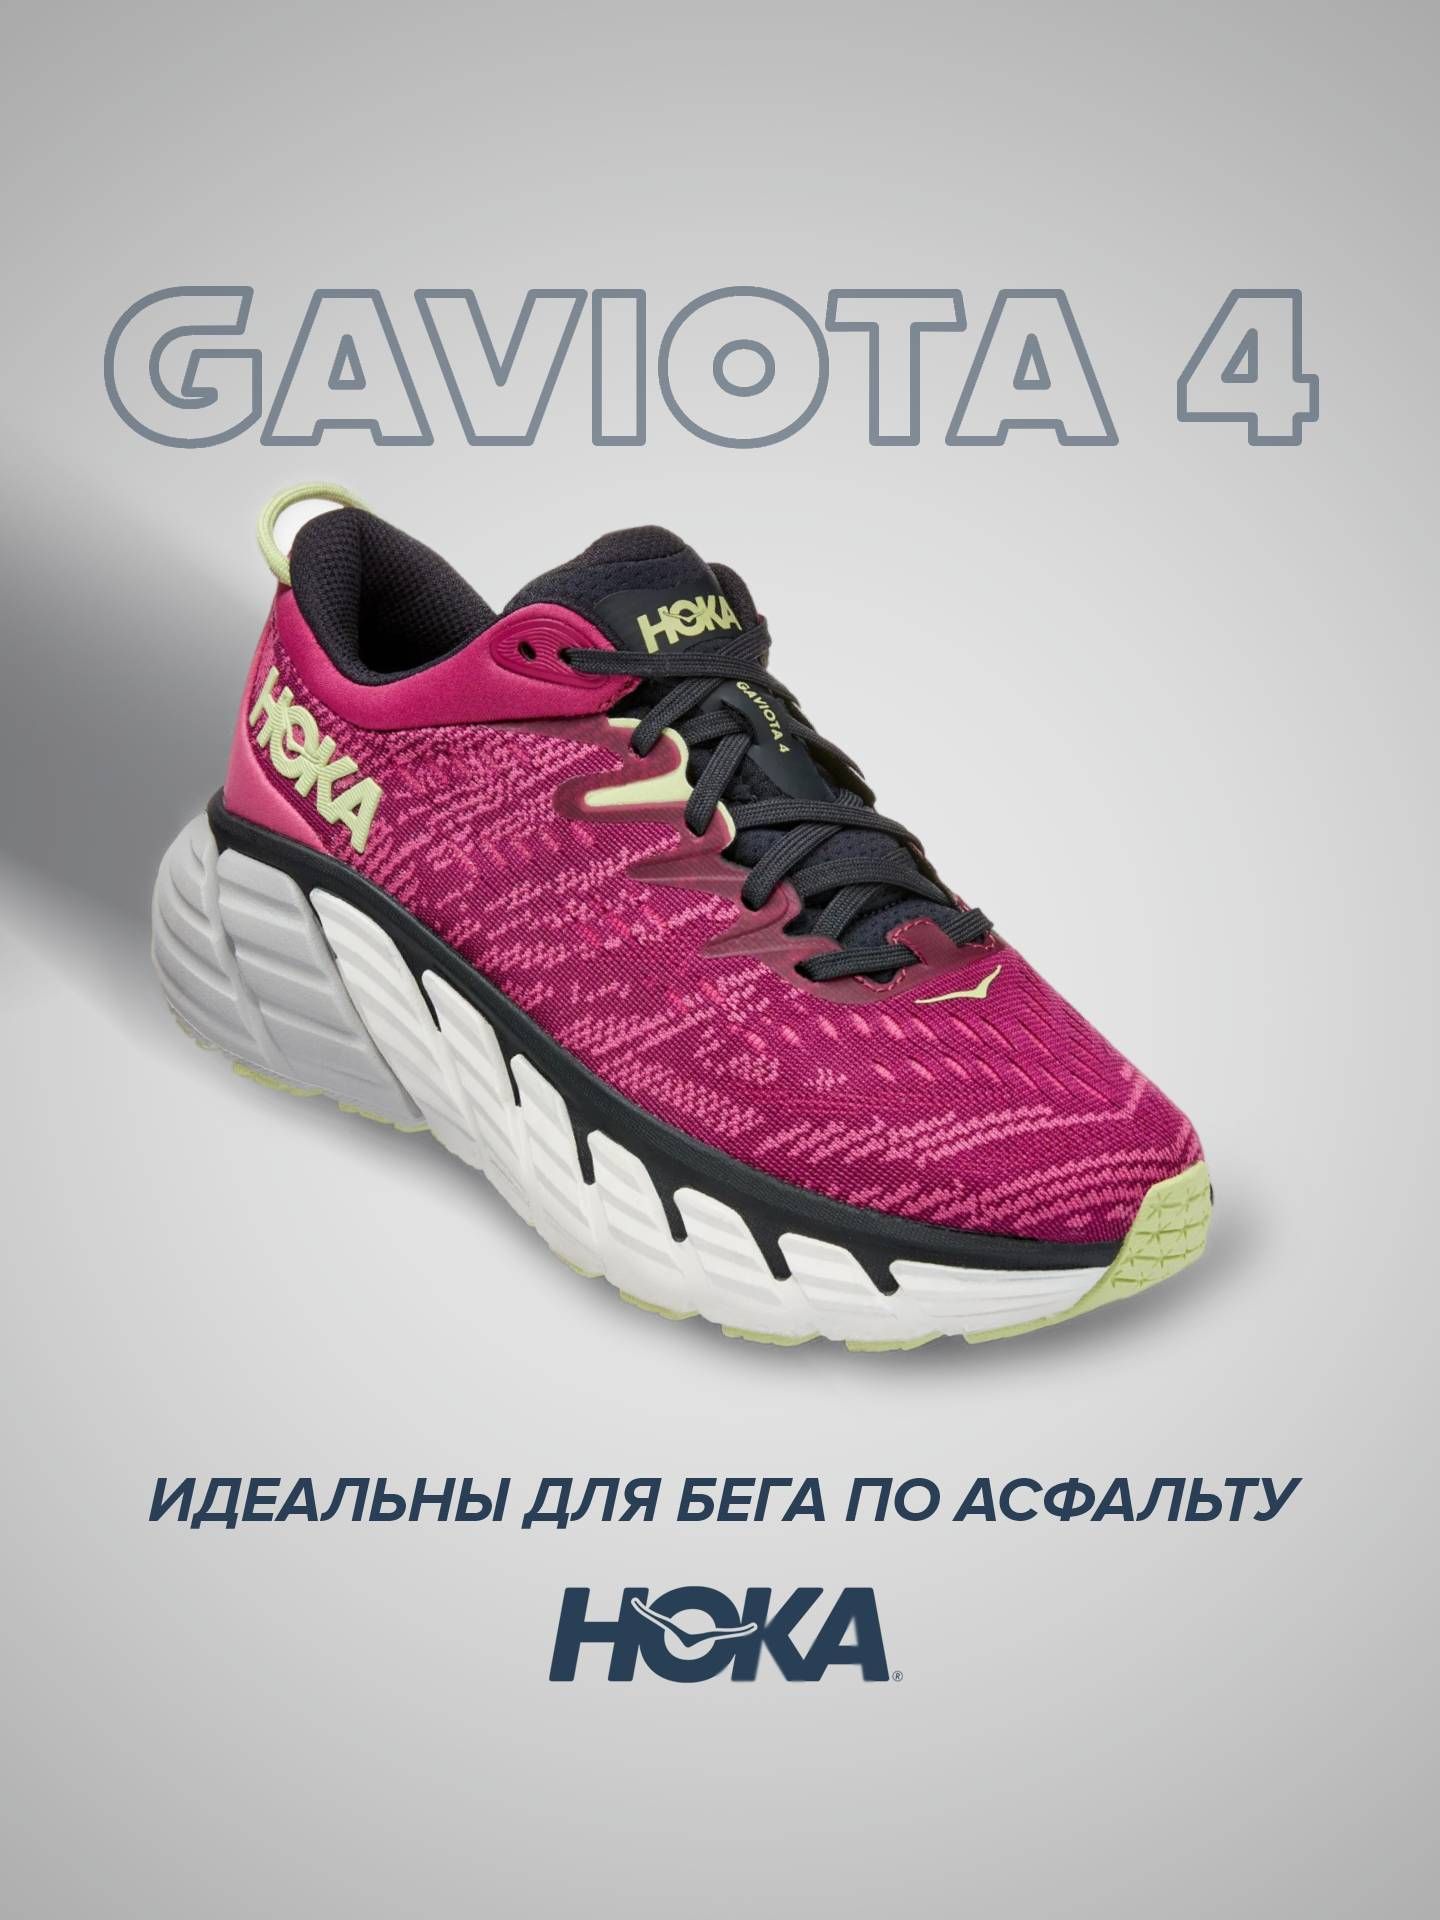 кроссовки женские Hoka GAVIOTA 4 розовые 9.5 US